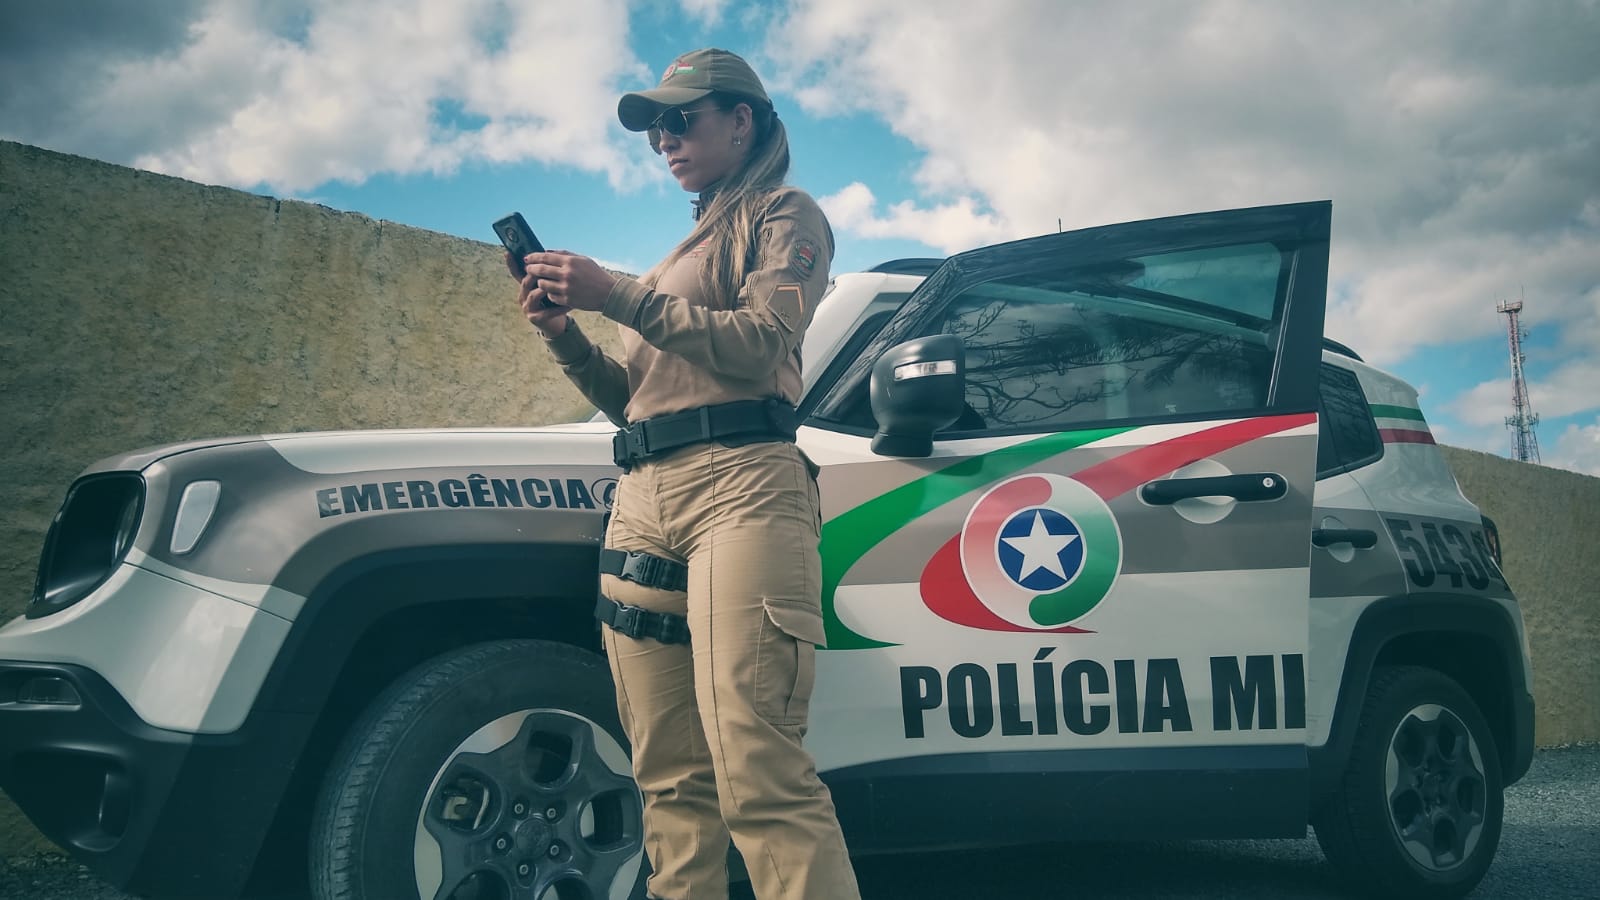 PolÍcia Militar De SÃo JoÃo Batista Implanta O Programa Rede Catarina De ProteÇÃo À Mulher 5488